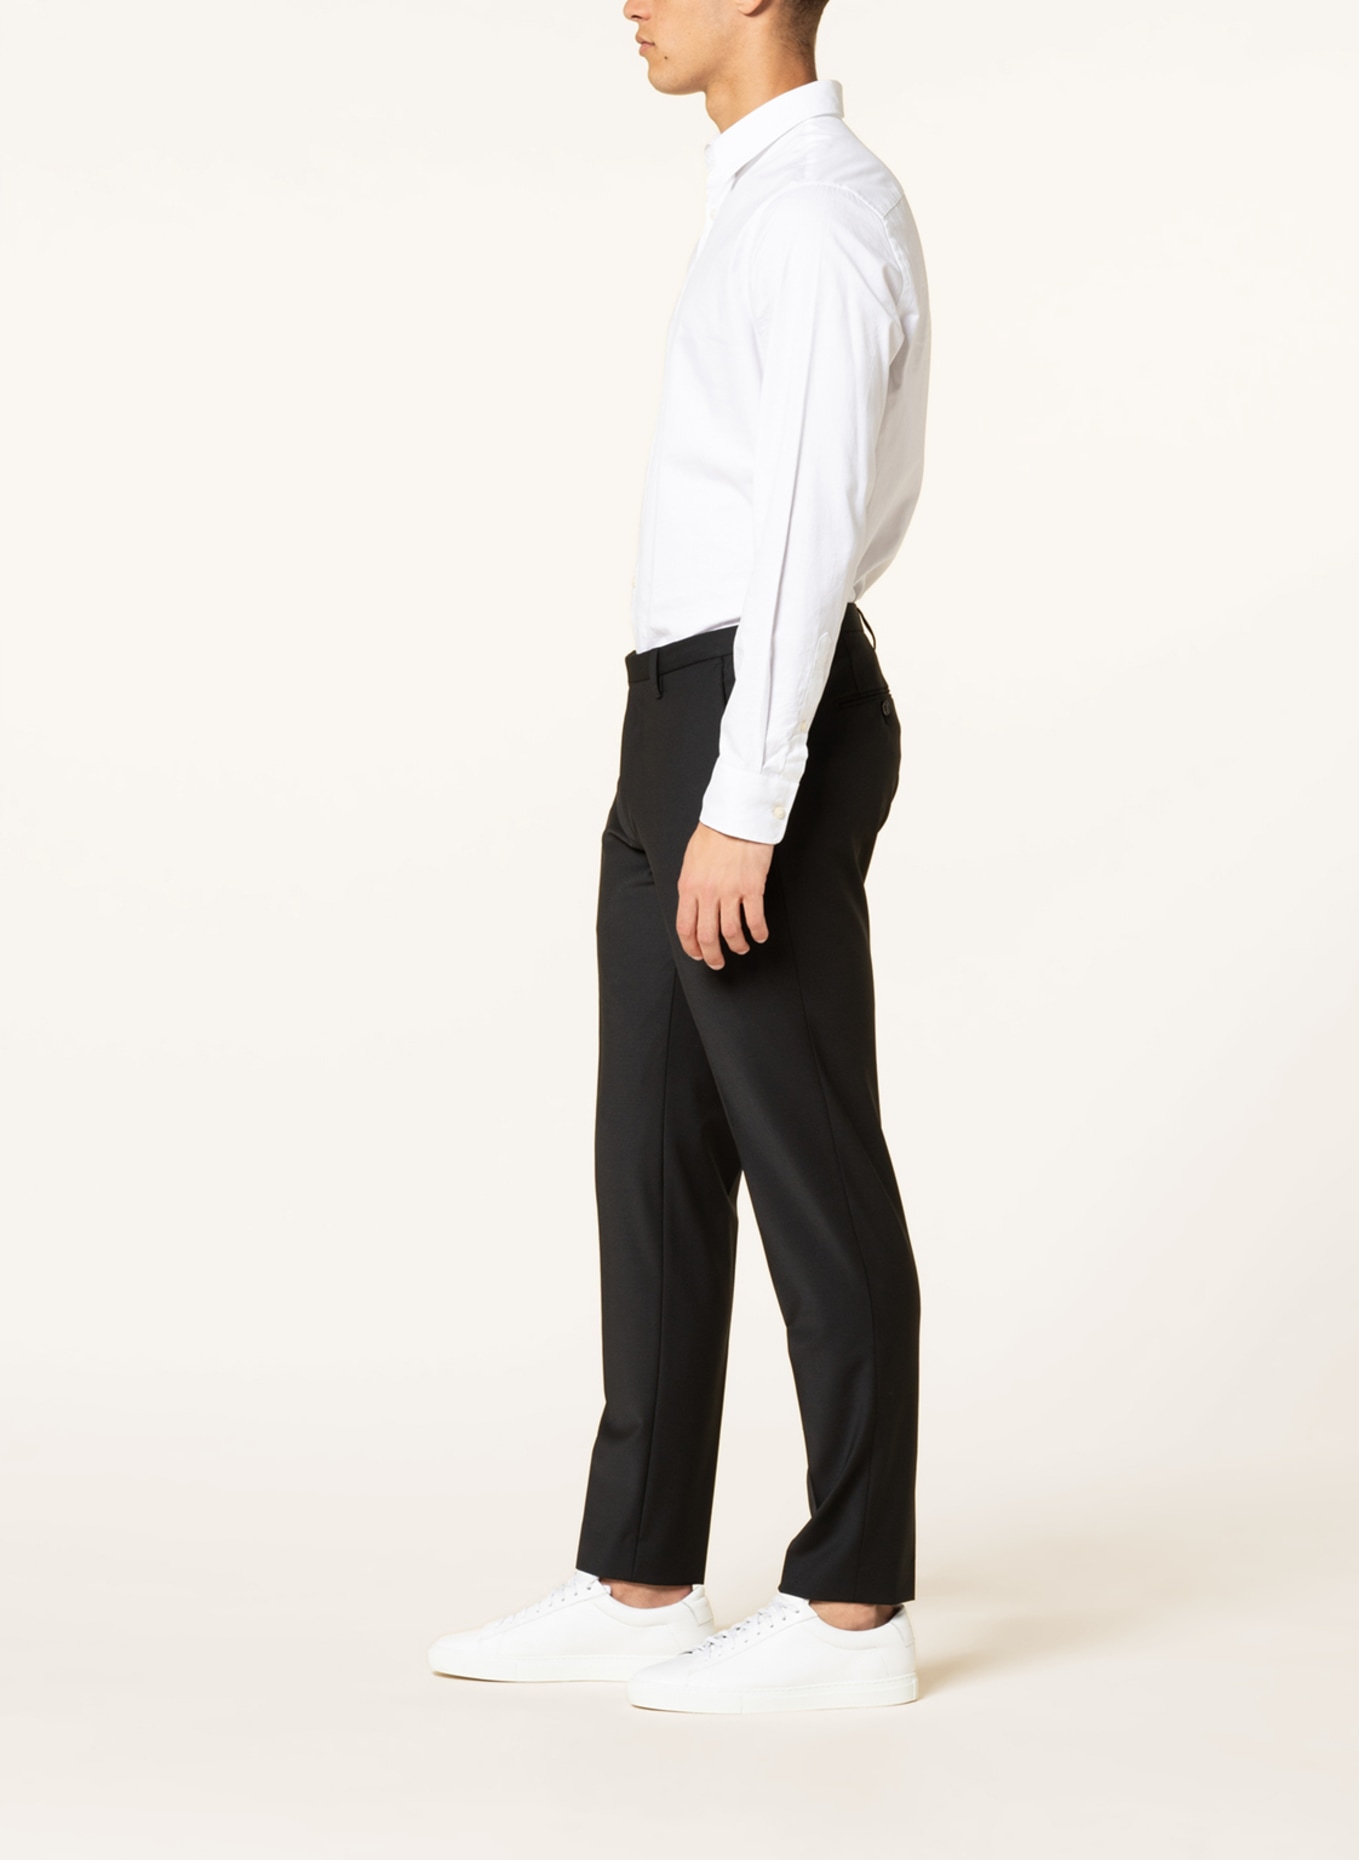 CINQUE Suit trousers CICASTELLO super slim fit, Color: 99 (Image 5)